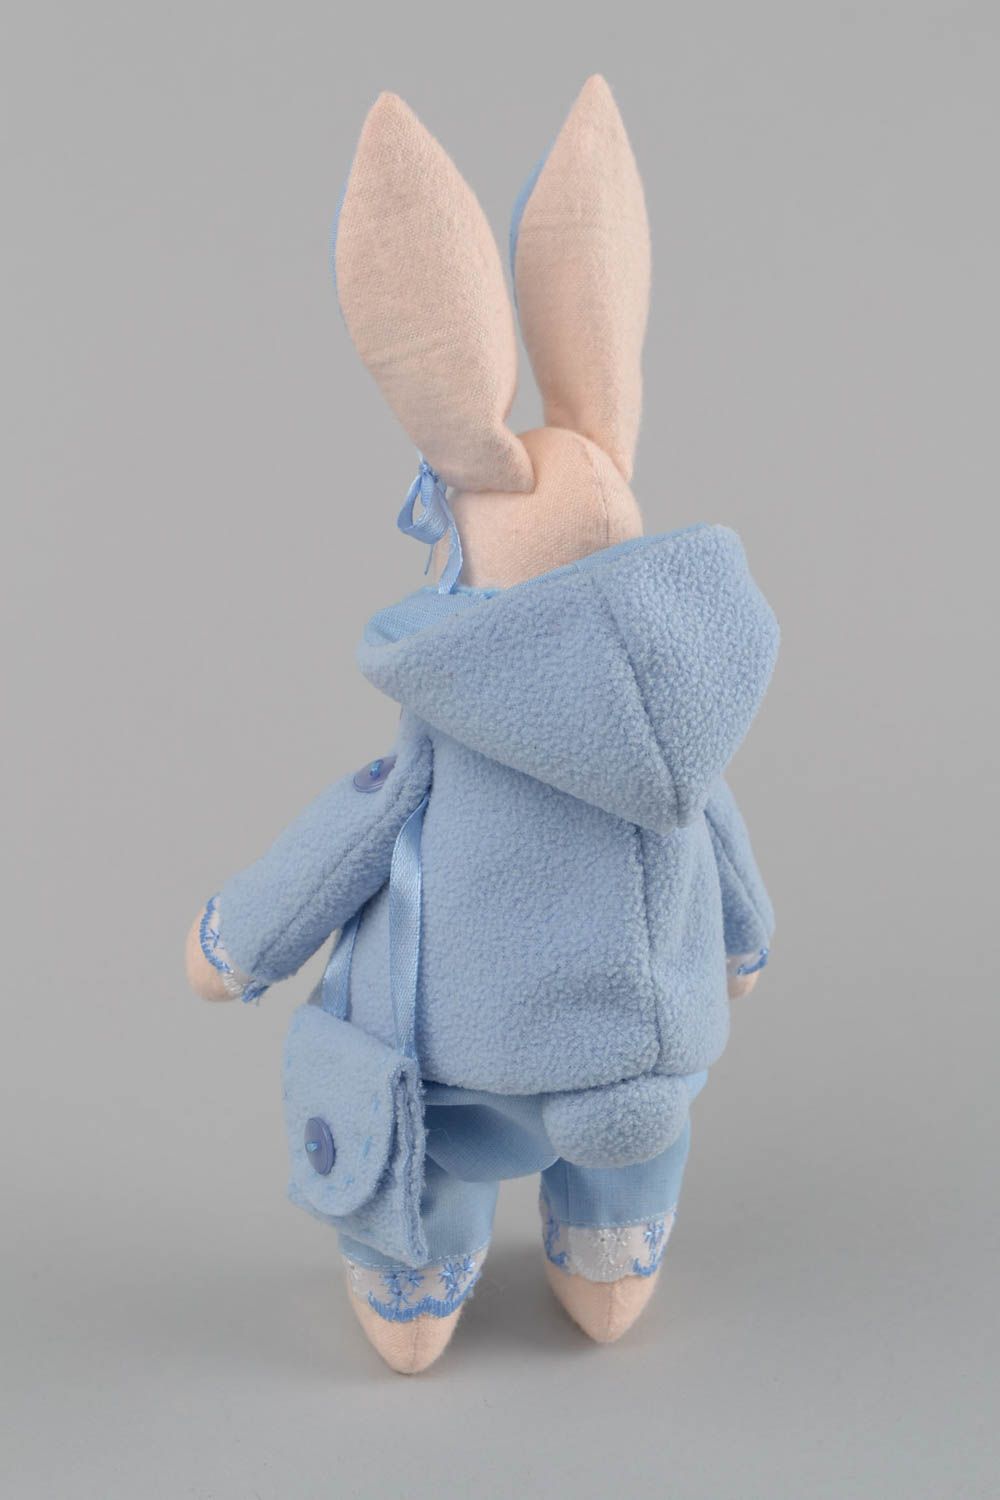 Textil Kuscheltier Hase im blauen Anzug handmade Schmuck für Haus Dekor  foto 5